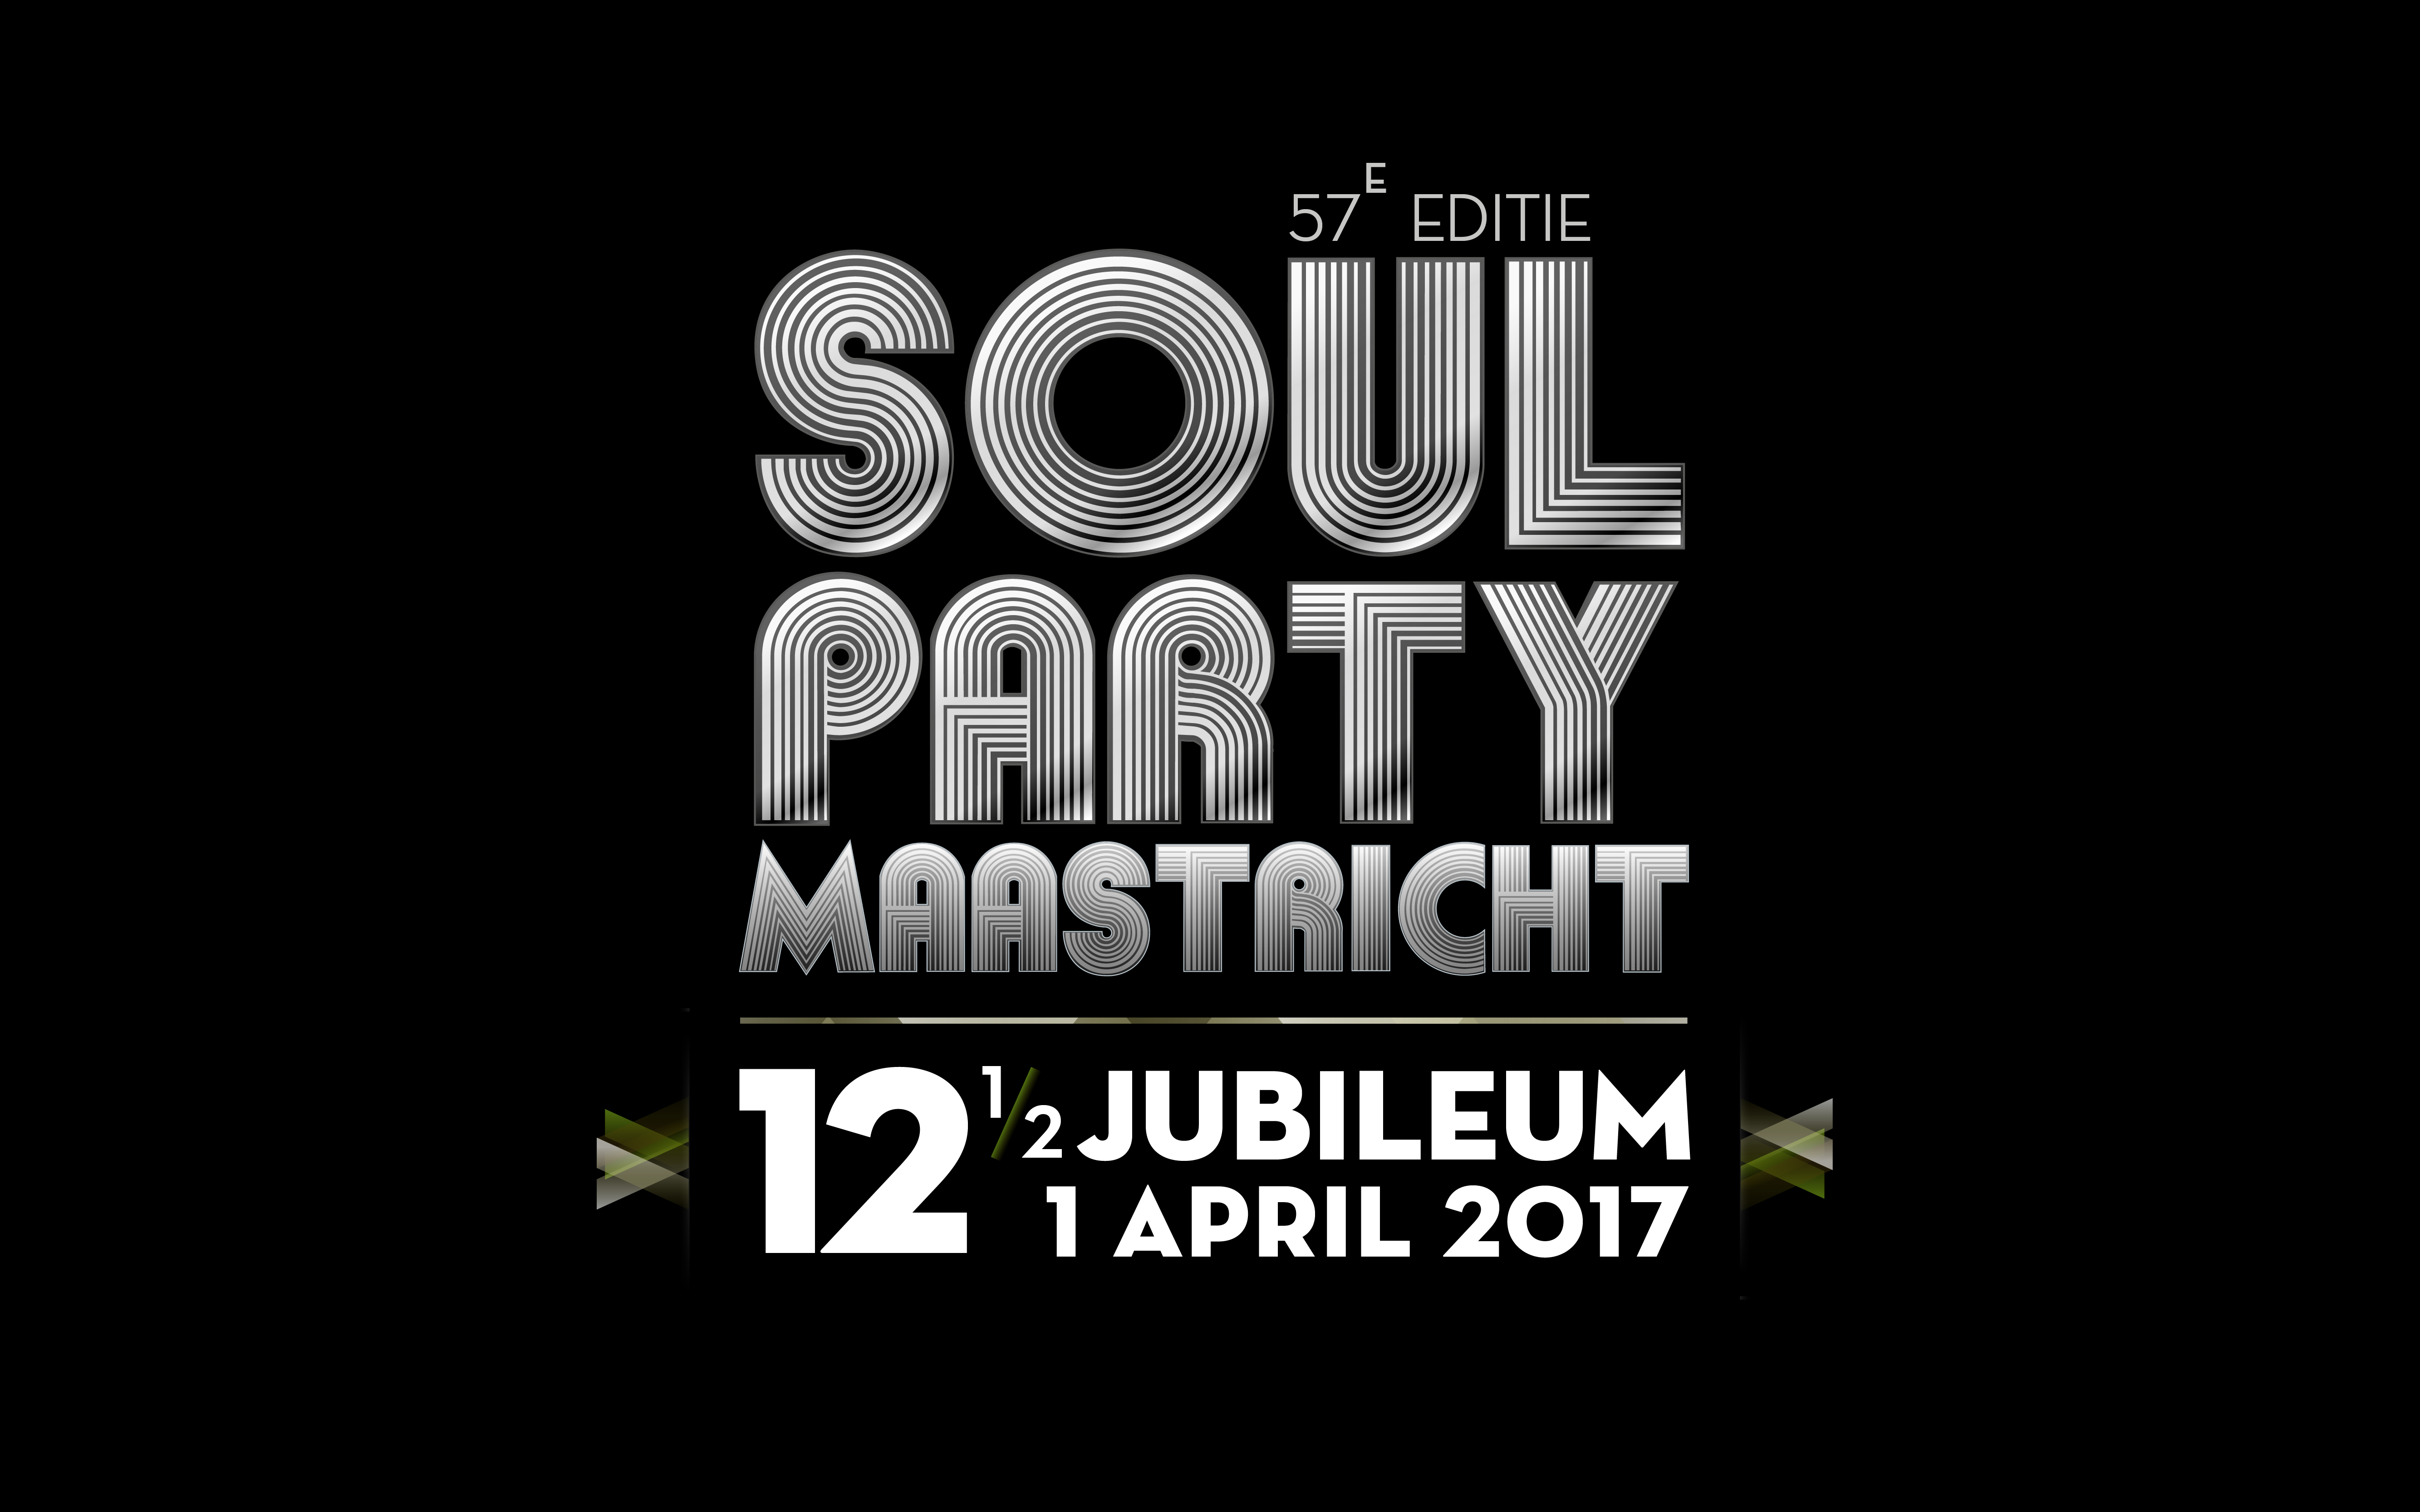 Soulparty 1 april 2017